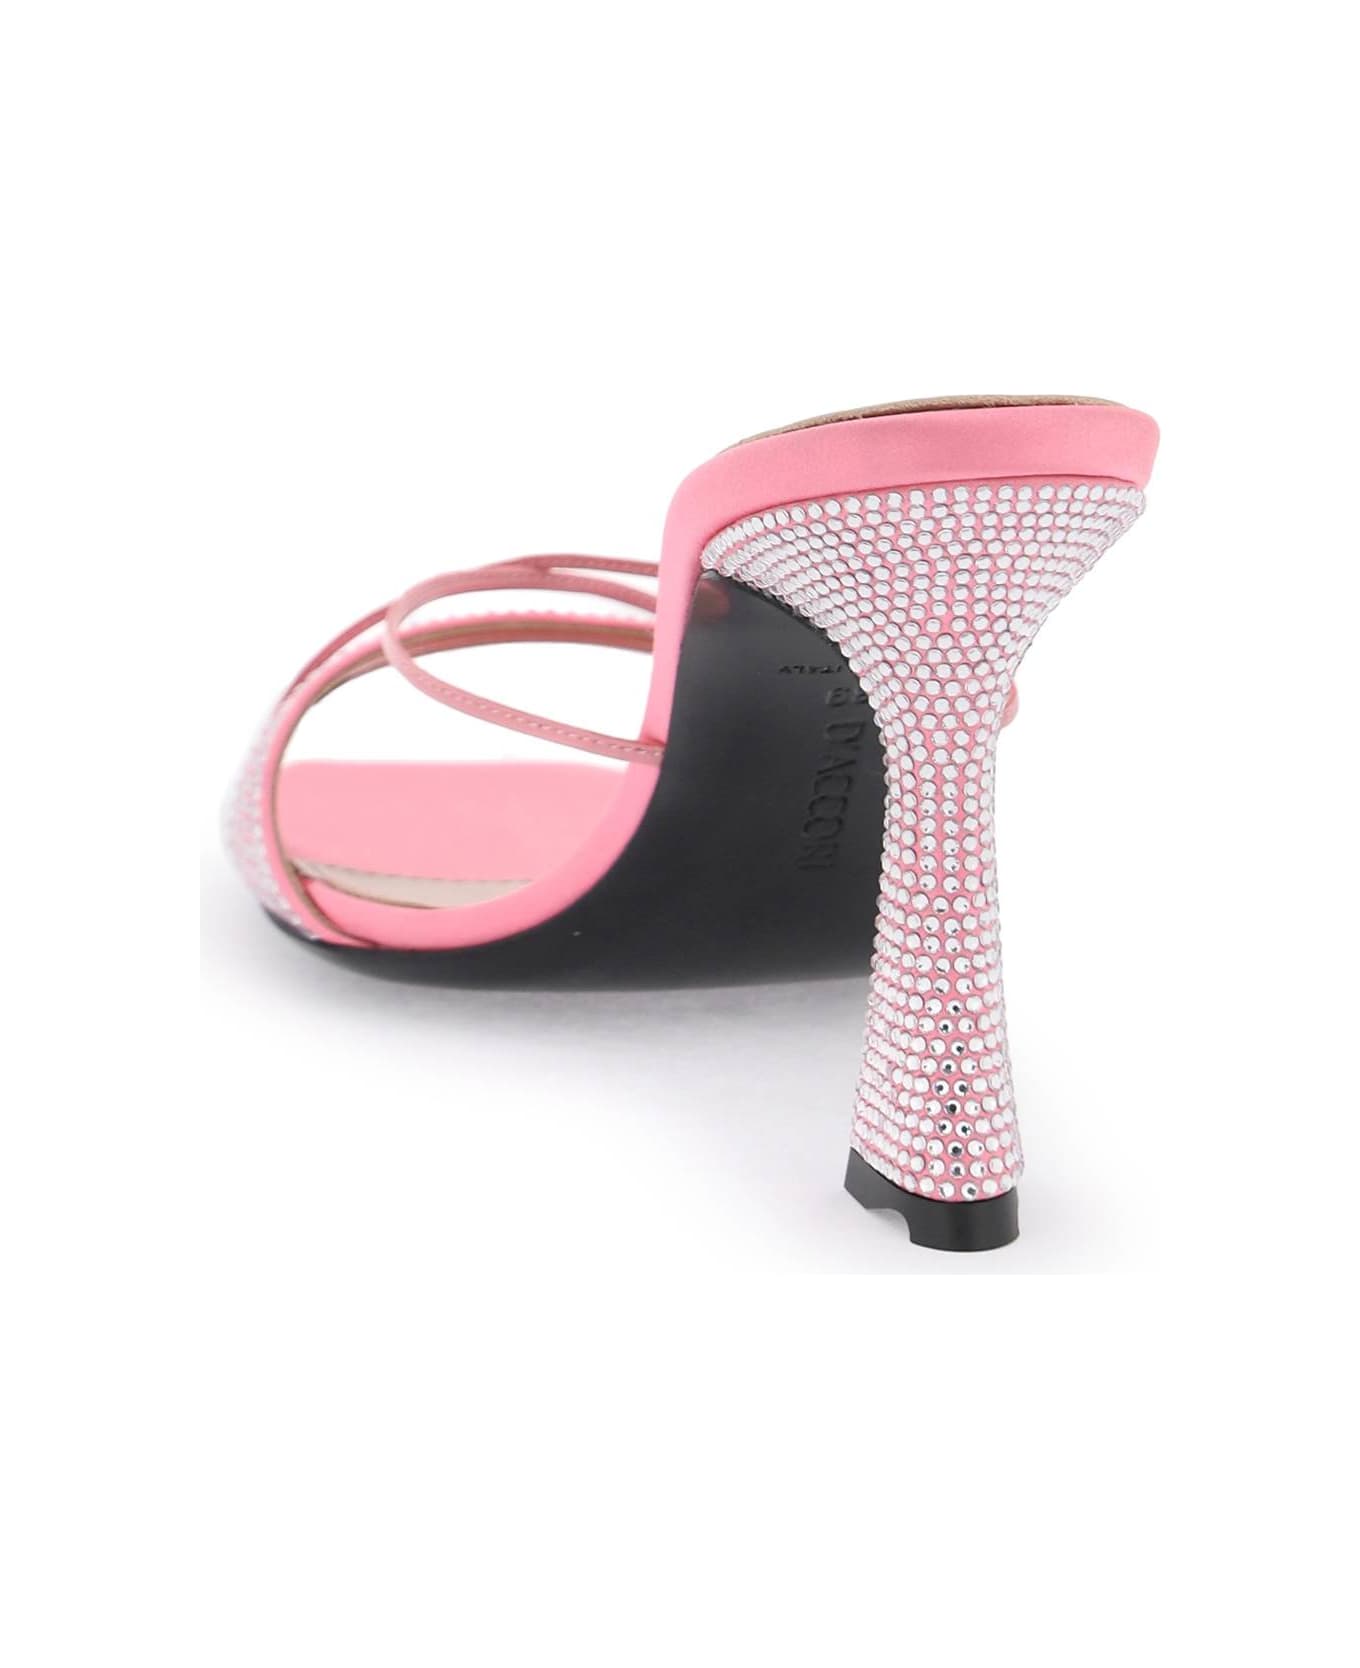 D'Accori Lust Mules - POWDER PINK (Pink)